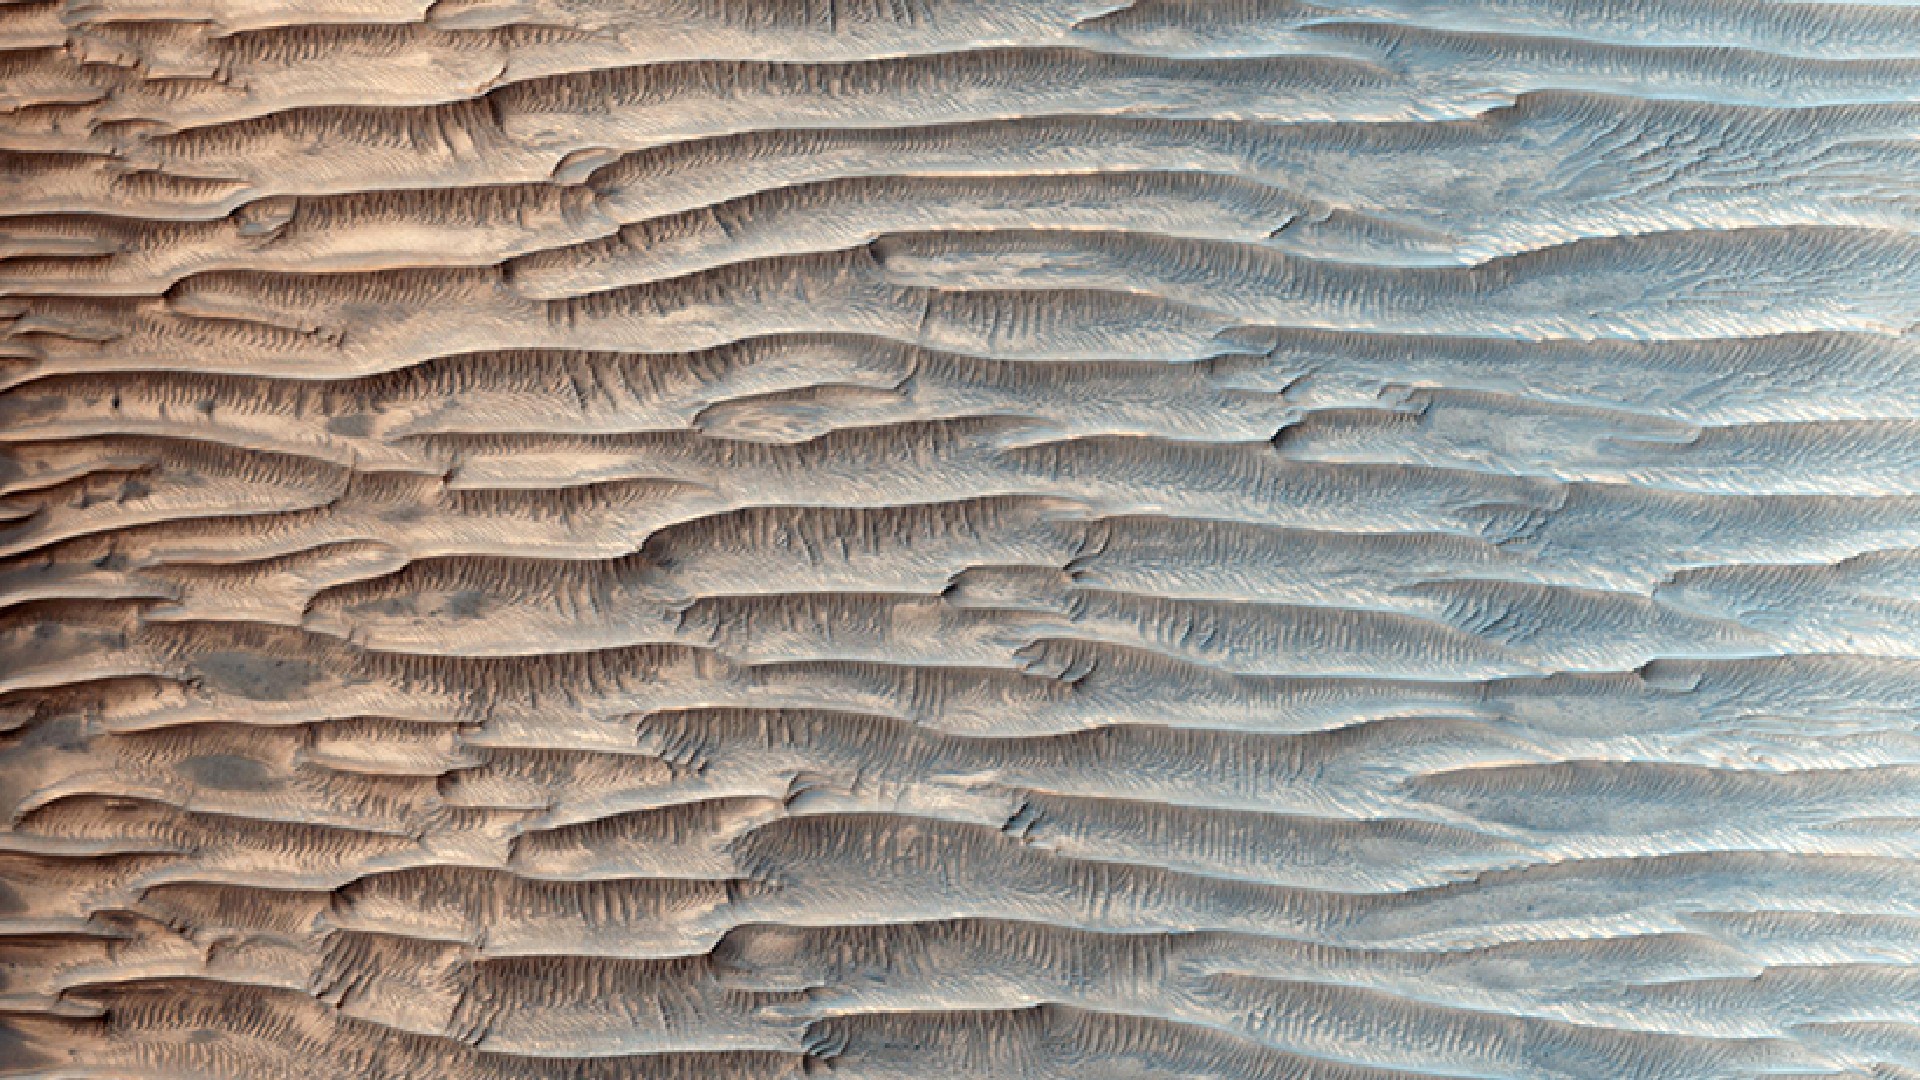 mars-dune-megaripples.jpg